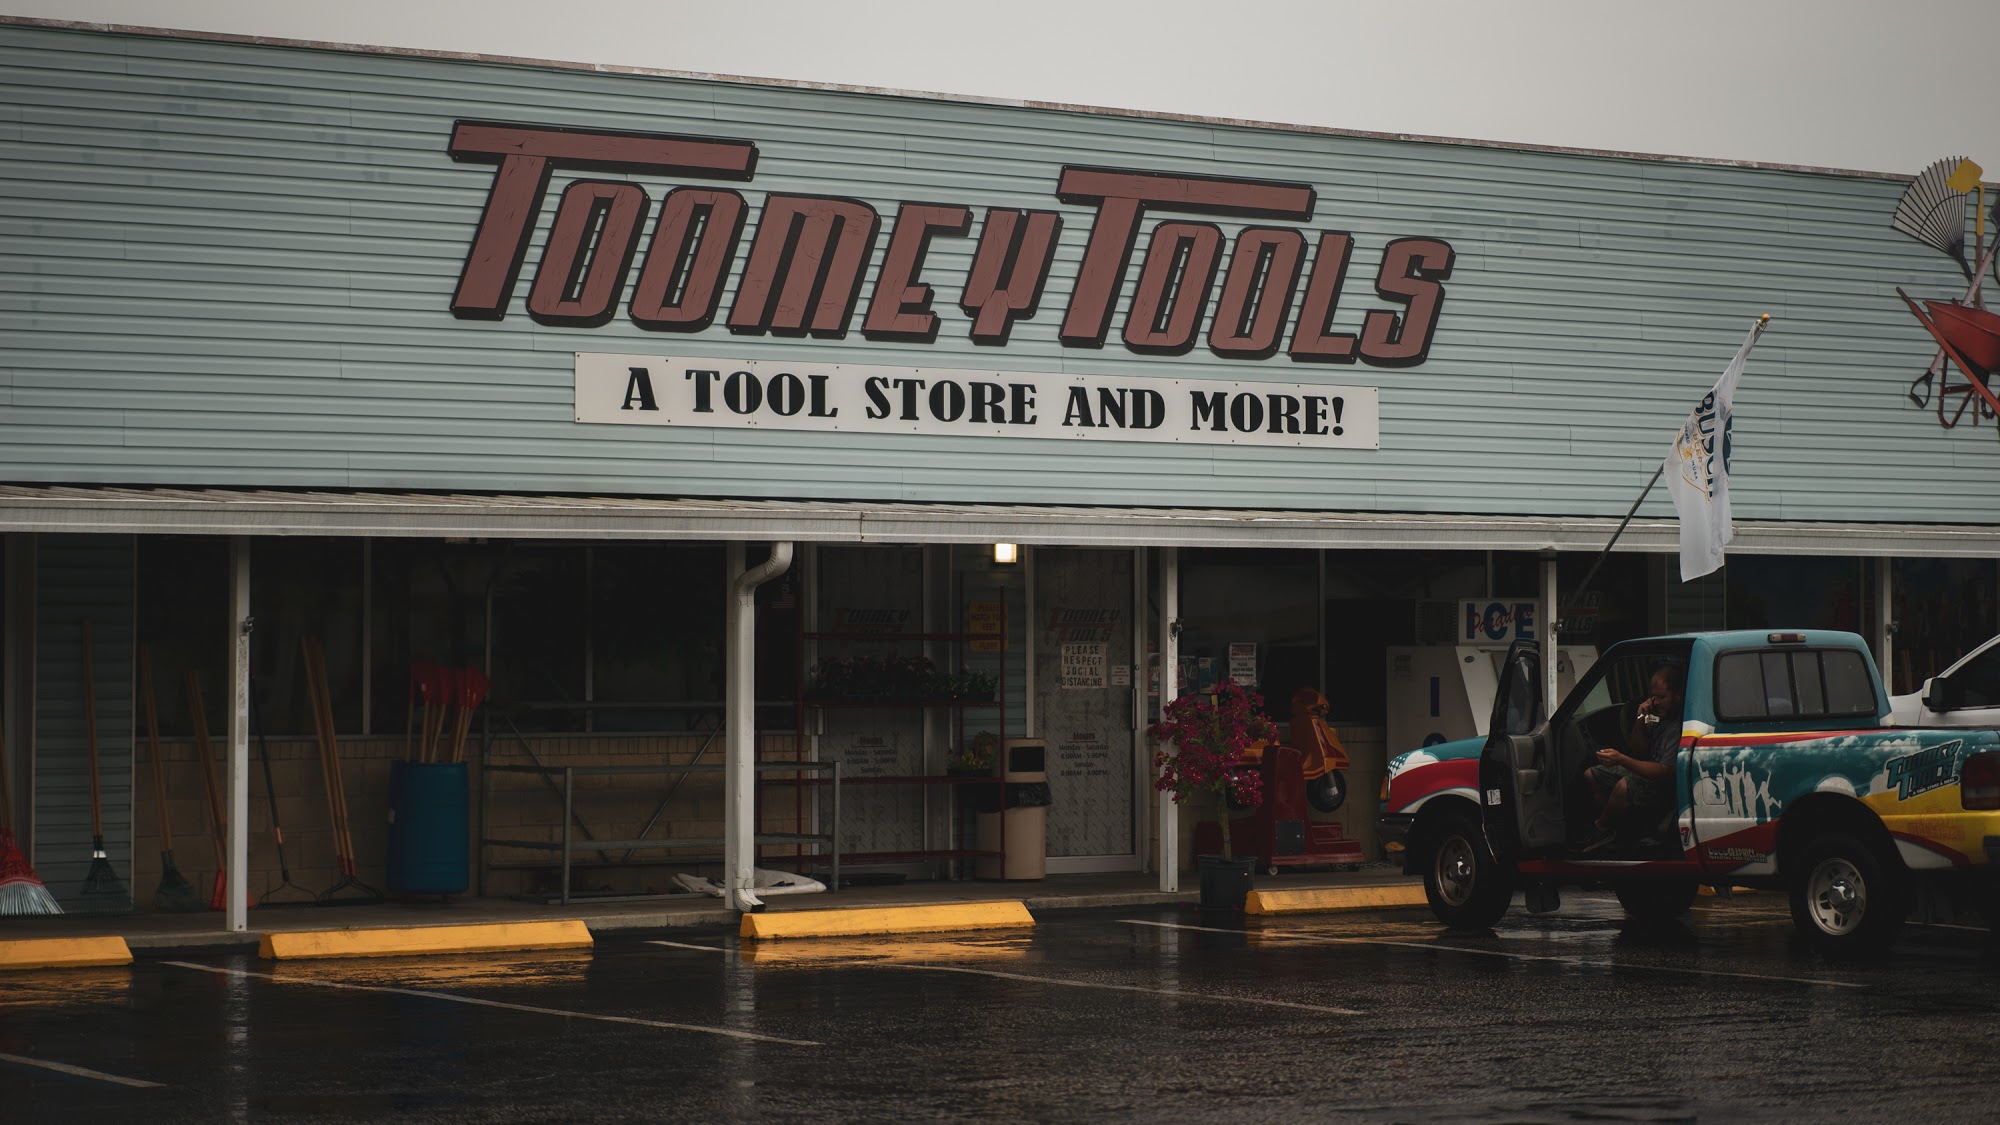 Toomey Tools